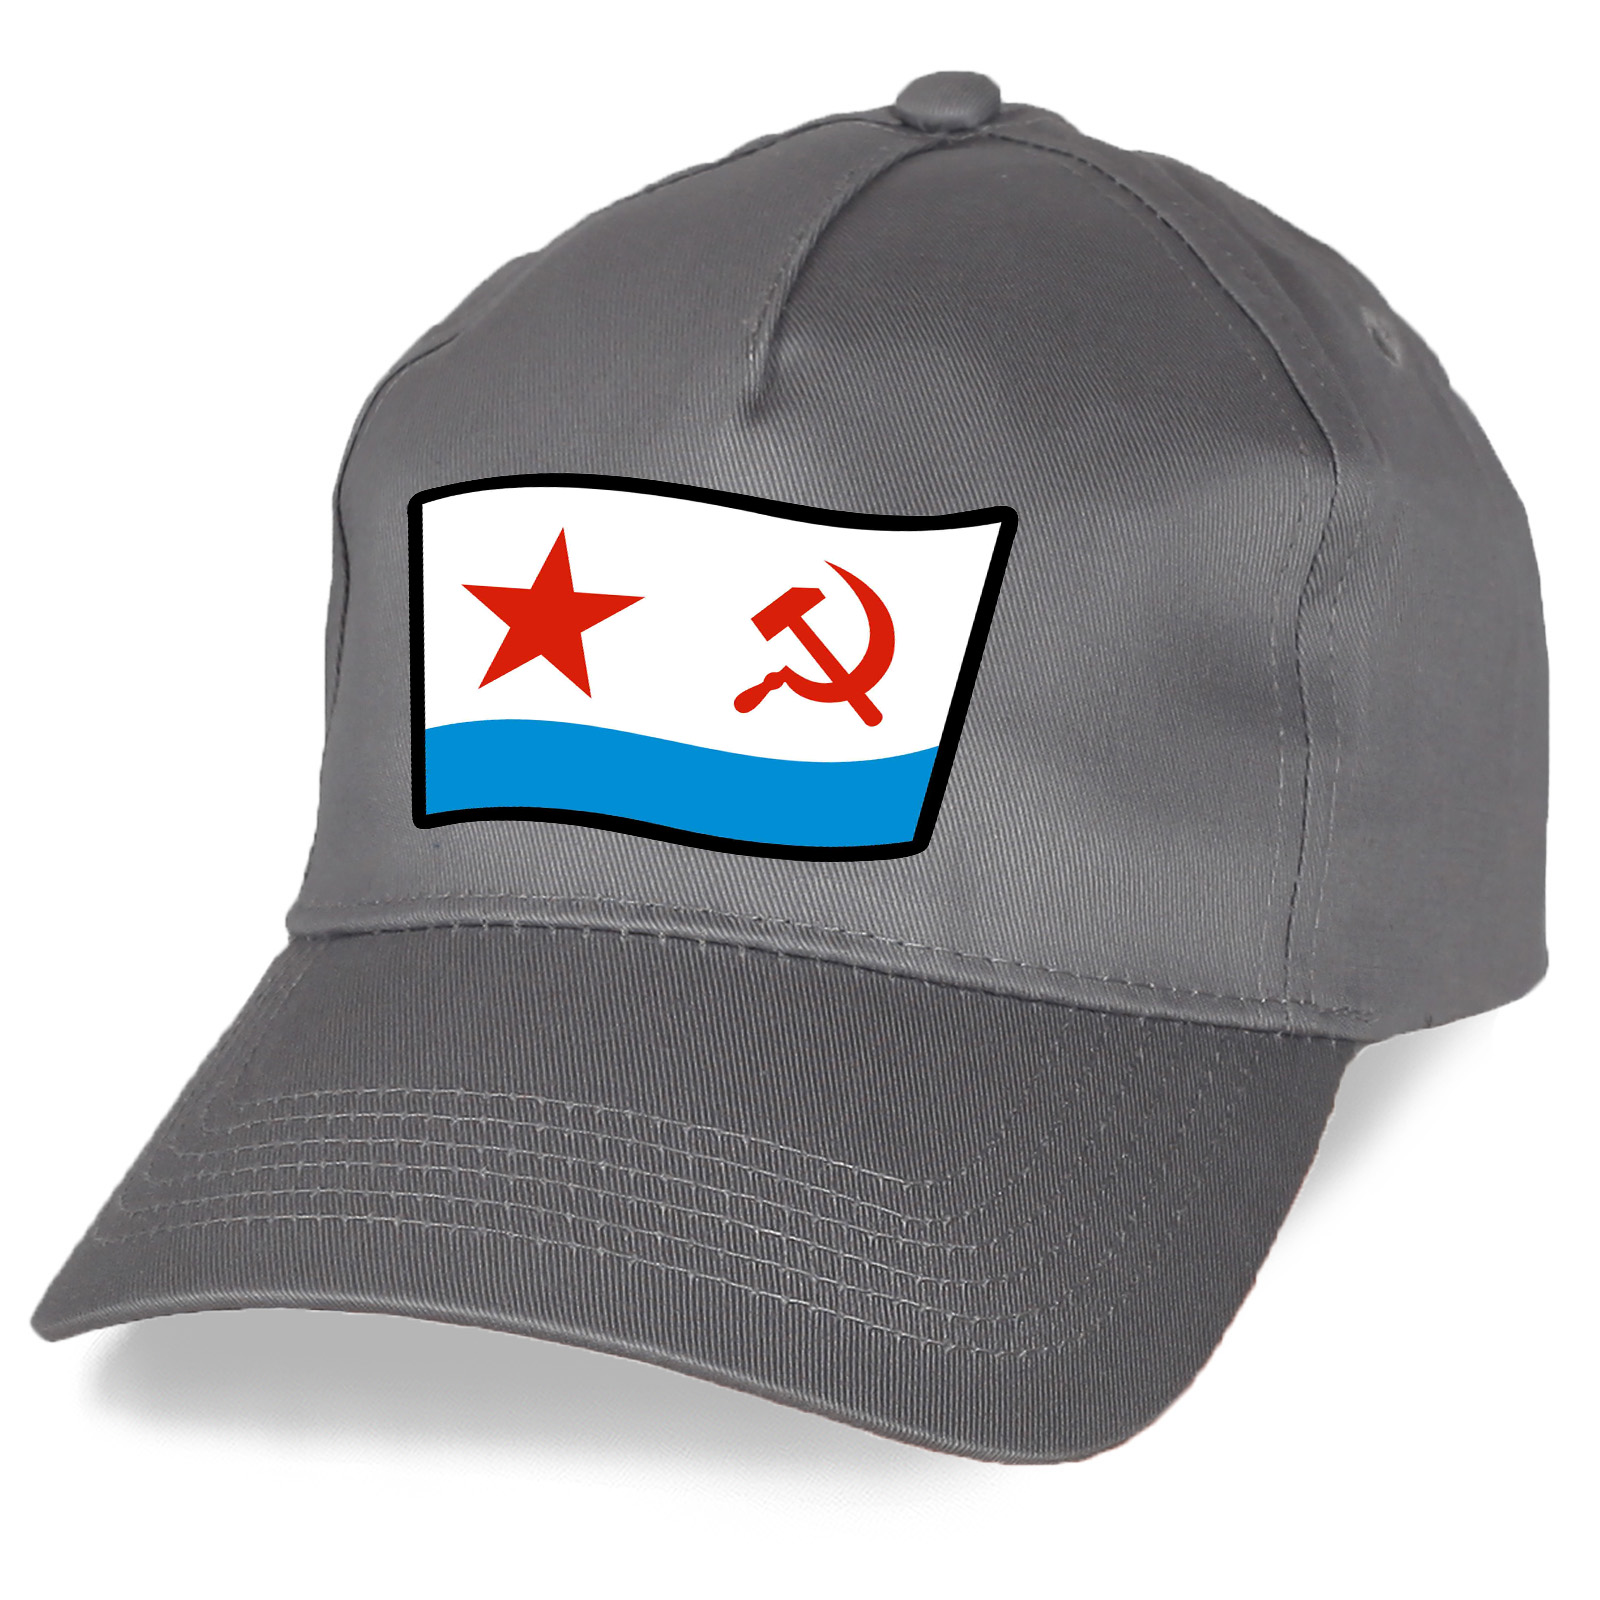 Кепка с символикой ВМФ СССР - купить в подарок